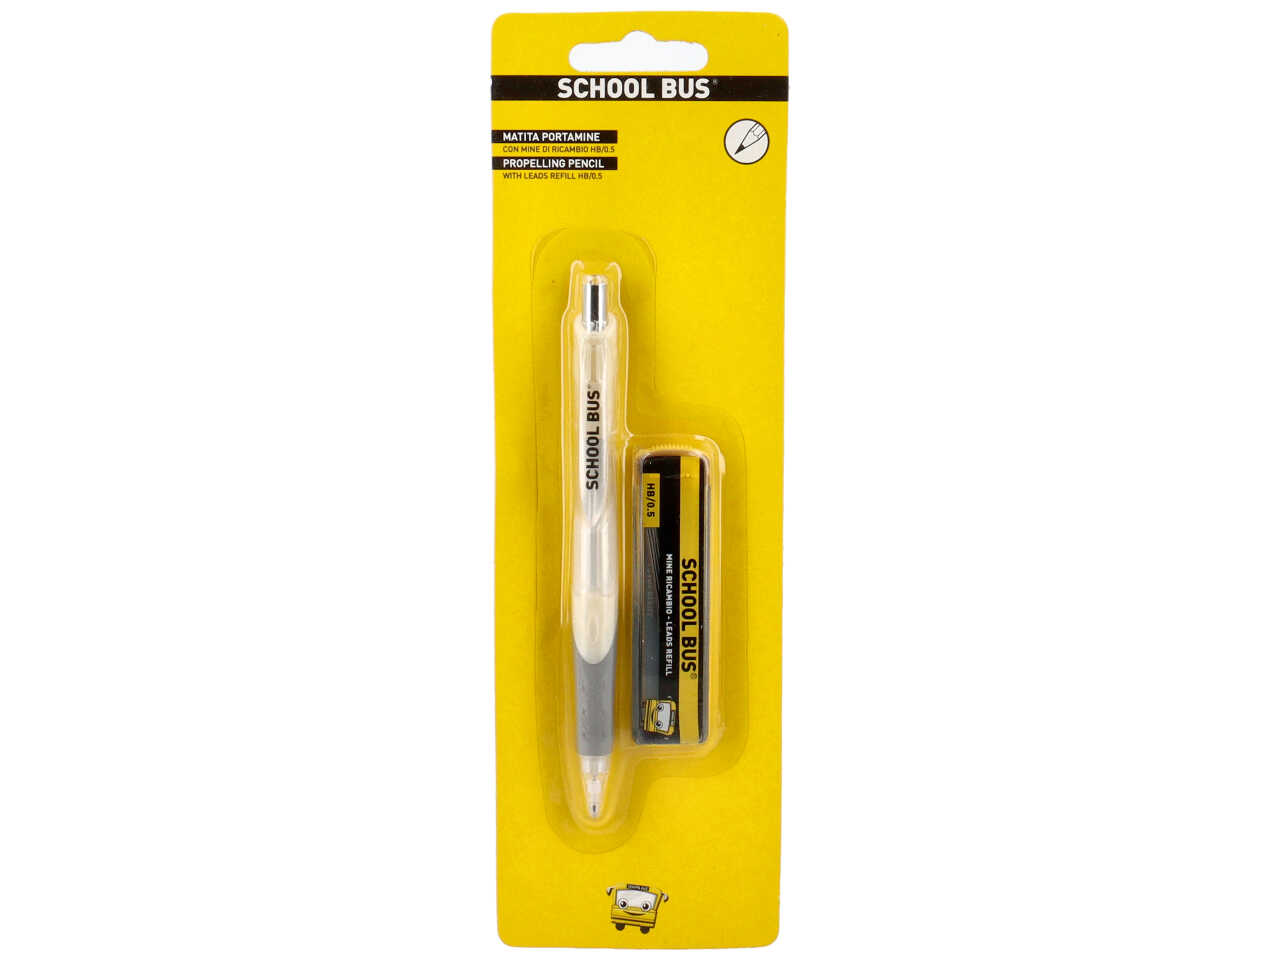 matita portamine con meccanismo a scatto, impugnatura antiscivolo e mine di  ricambio hb 0,5mm